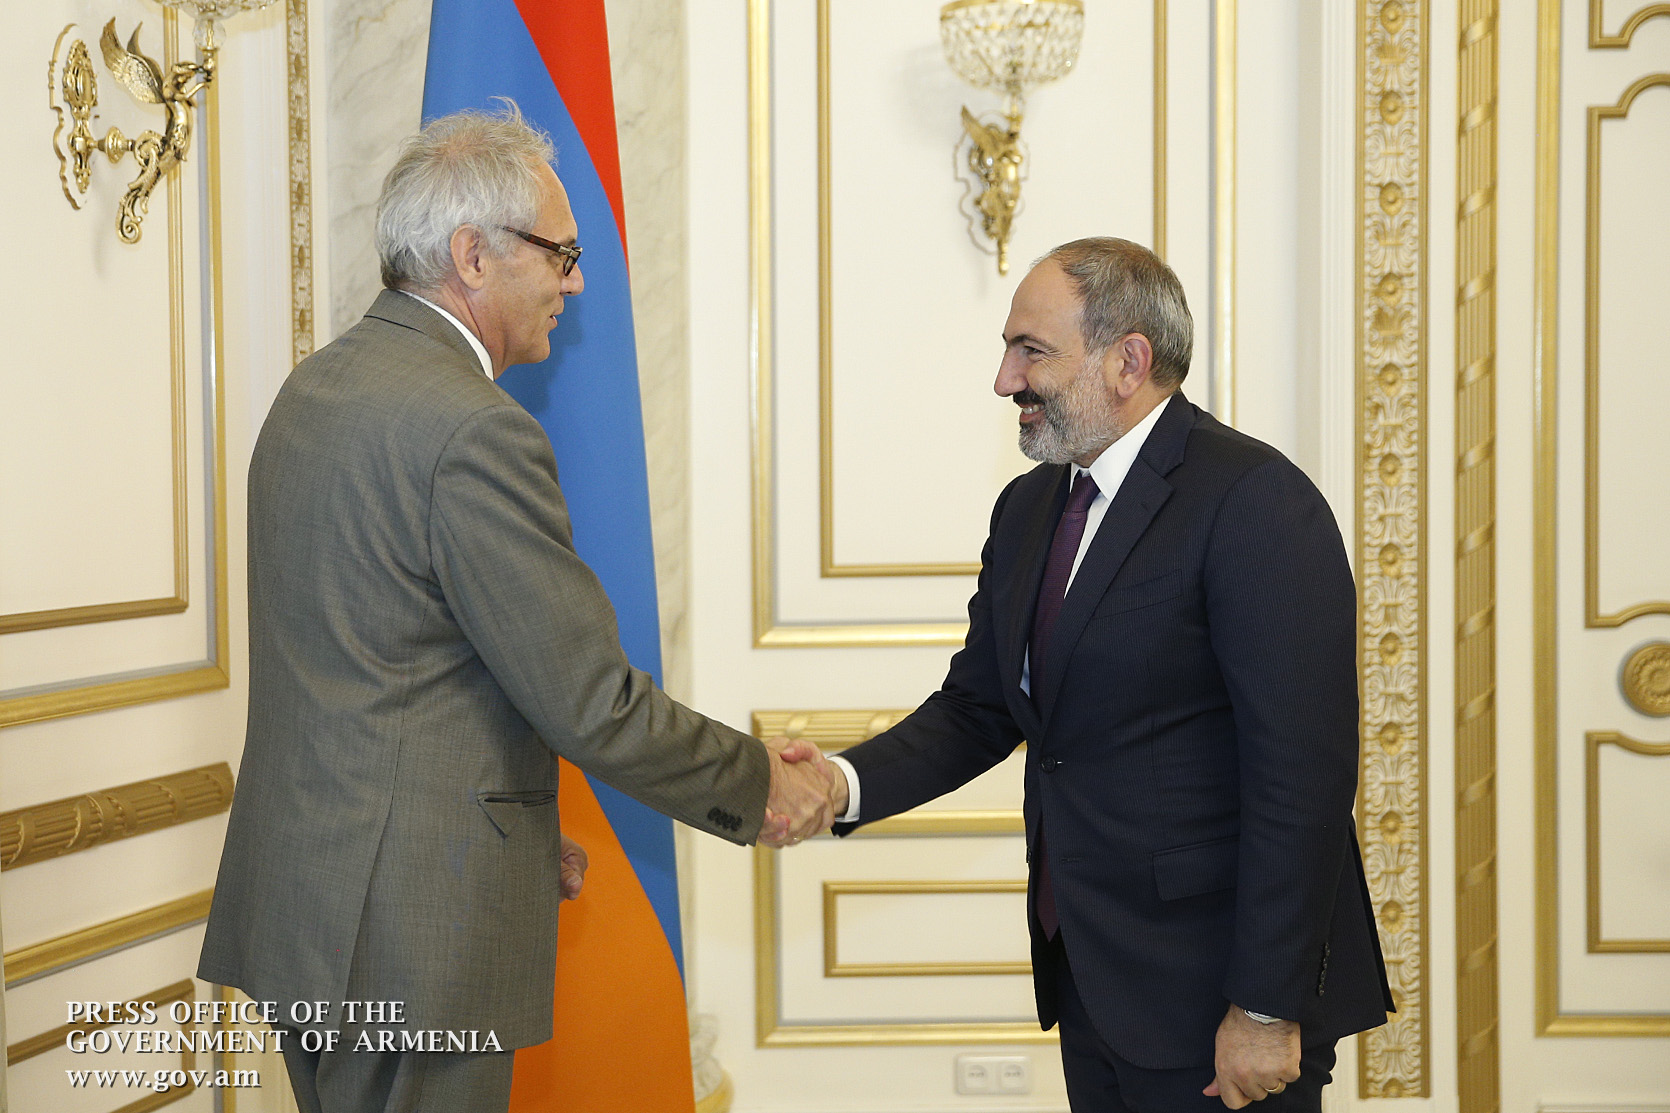 Մաթիաս Քիսլեր. Հայաստանի հետ ավանդական լավ հարաբերությունները նոր ազդակ են ստացել երկրում ժողովրդավարության ամրապնդման գործընթացների արդյունքում